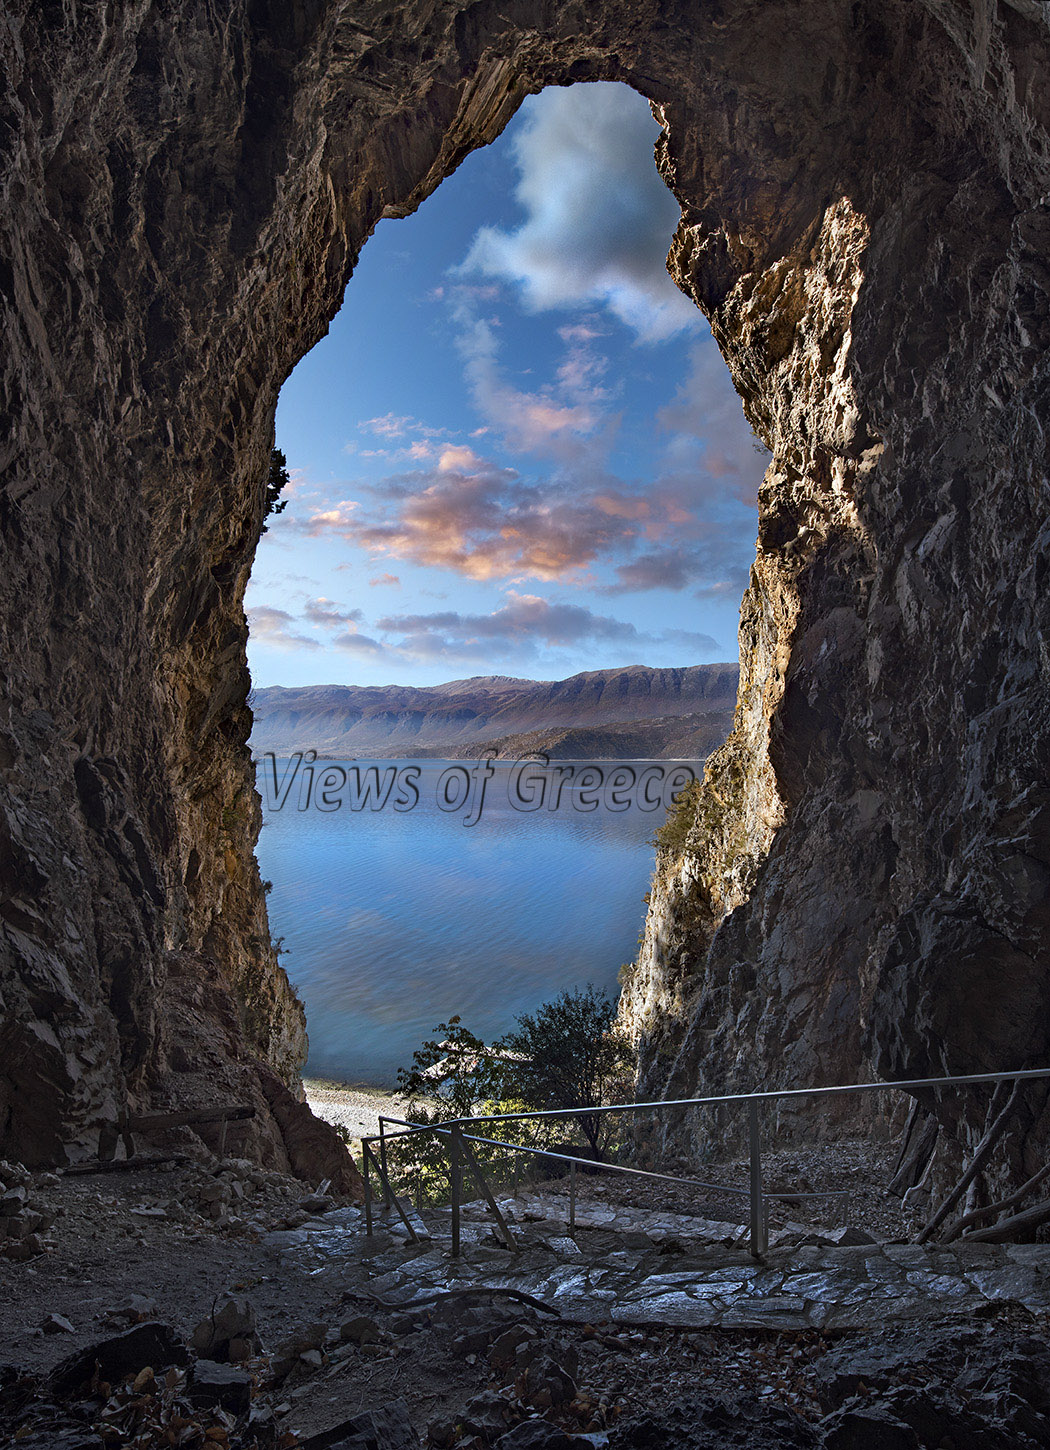 Η θέα στην Μεγάλη Πρέσπα από το σπηλαιώδη ναό της Αγίας Ελεούσας